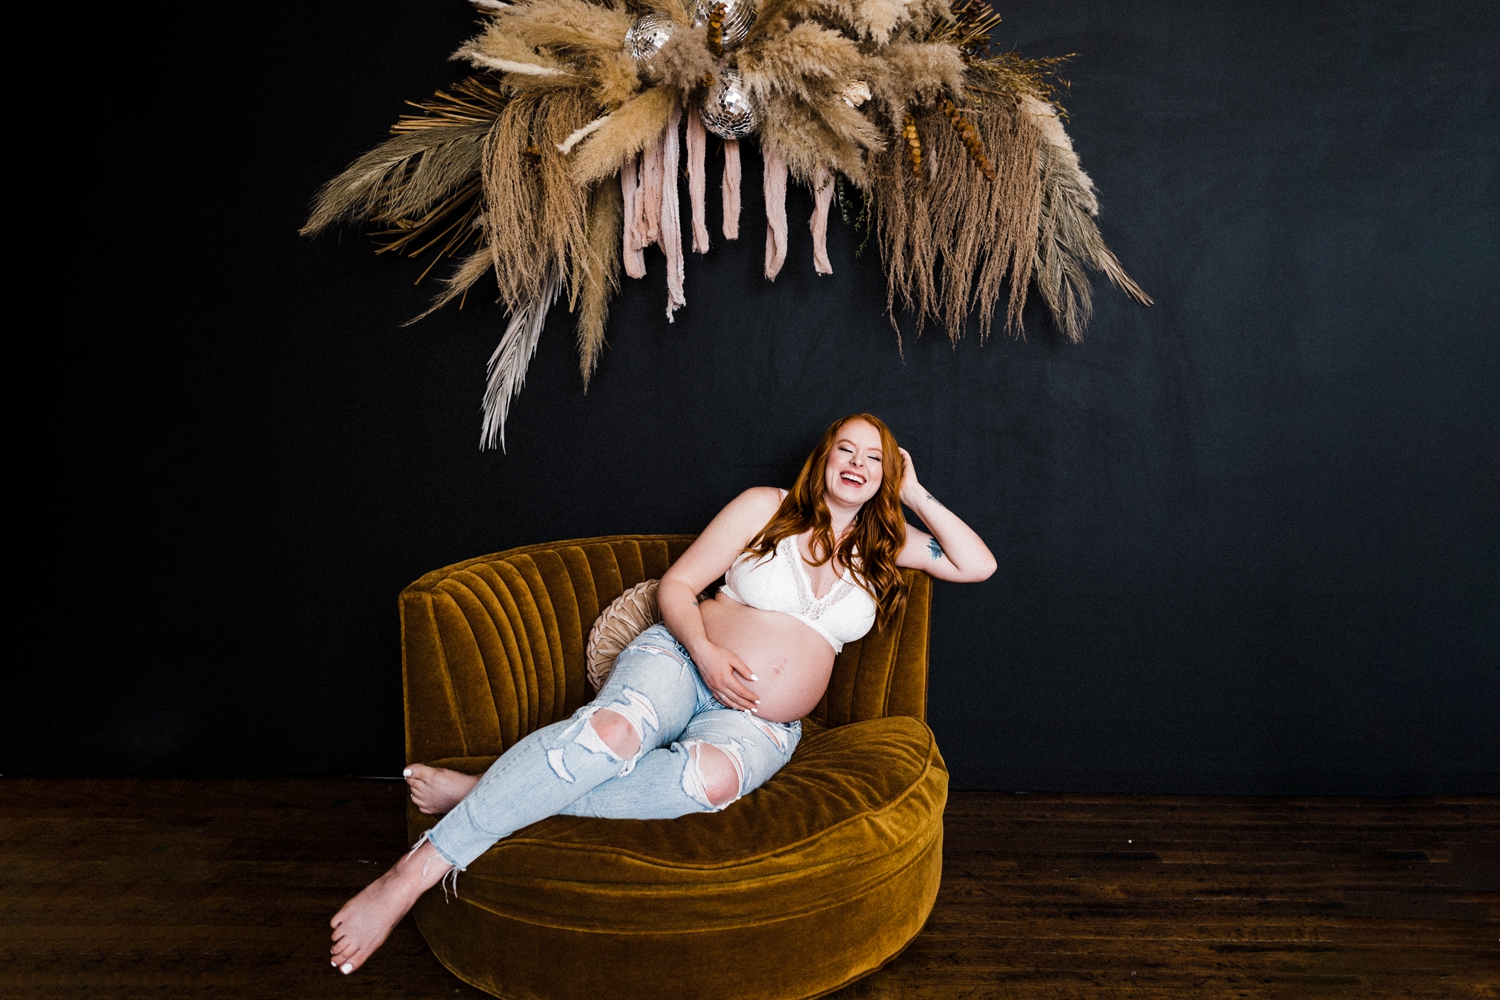 Bare Belly Maternity Session in Dallas, Texas Studio Dear Meraki | Brittnie Renee Photo | Dallas Maternity and Family Photographer